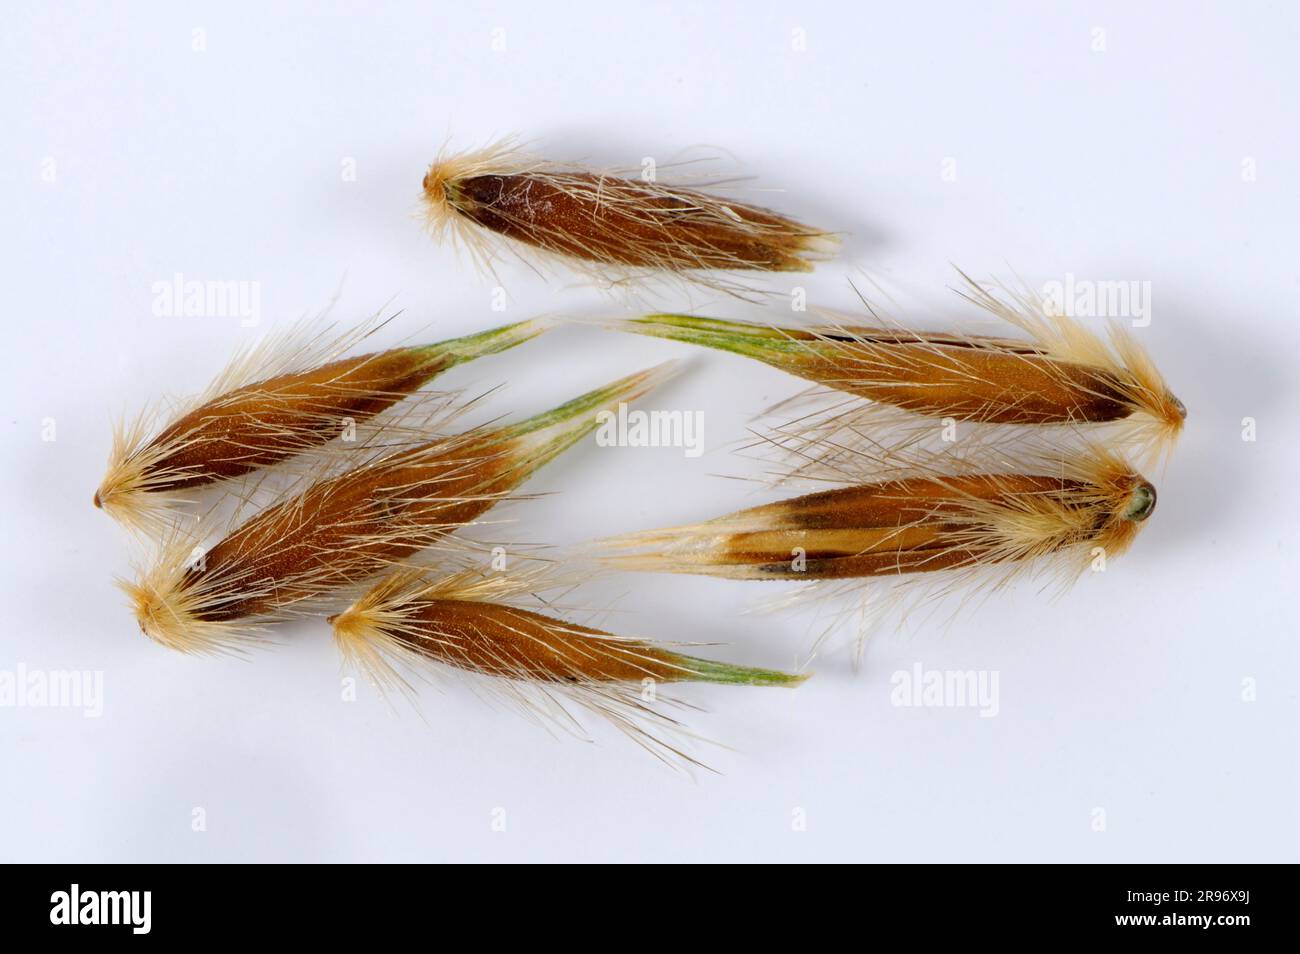 Wild oats (Avena fatua), Oats Stock Photo